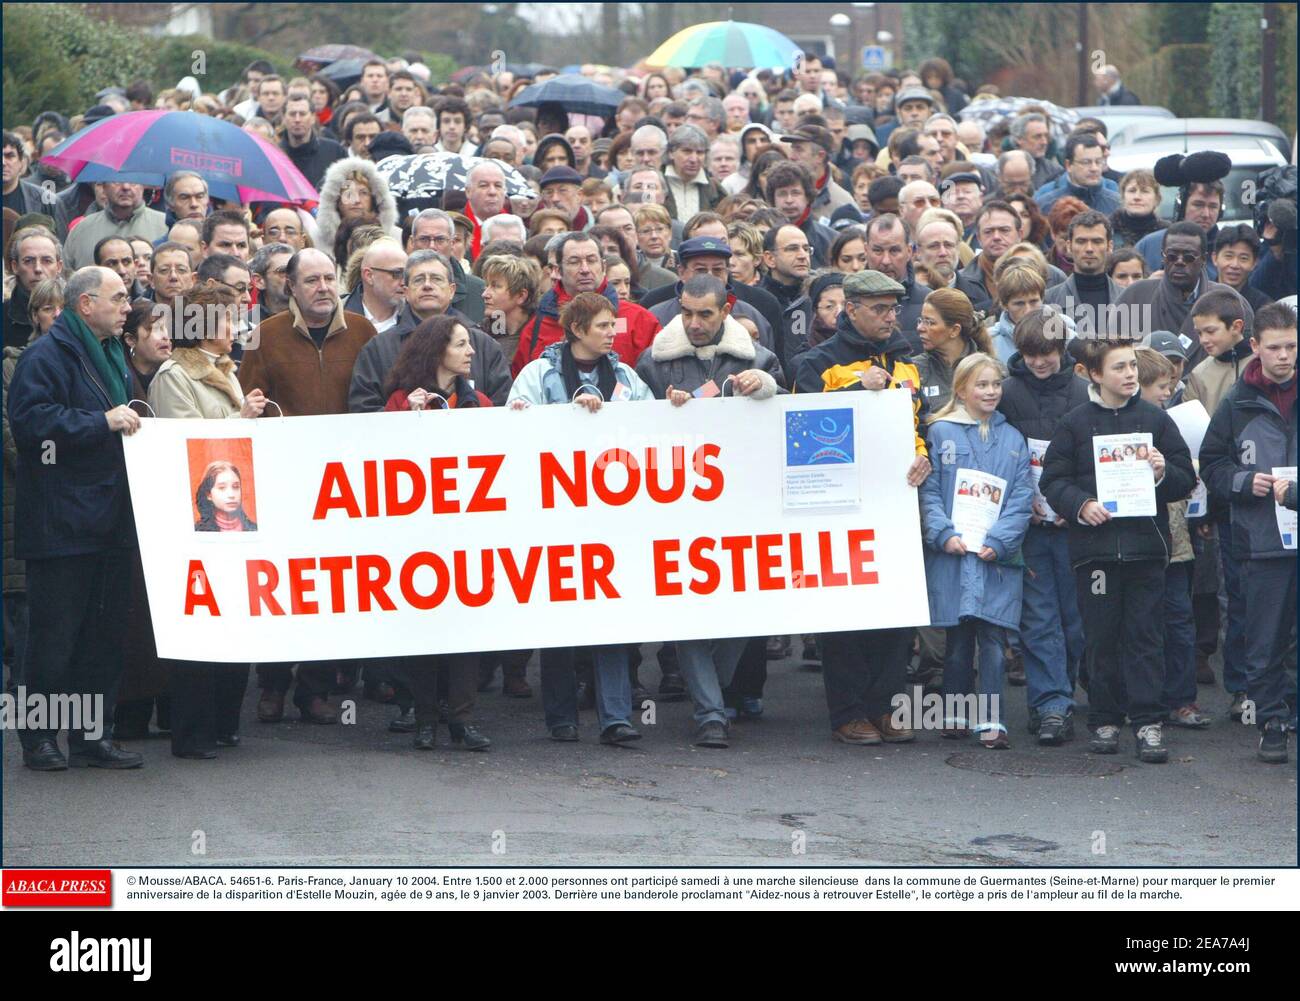 © Mousse/ABACA. 54651-6. Paris-France, January 10 2004. Entre 1.500 et 2.000 personnes ont particip samedi ˆ une marche silencieuse dans la commune de Guermantes (Seine-et-Marne) pour marquer le premier anniversaire de la disparition d'Estelle Mouzin, age de 9 ans, le 9 janvier 2003. Derrire une banderole proclamant Aidez-nous ˆ retrouver Estelle, le cortge a pris de l'ampleur au fil de la marche. Stock Photo